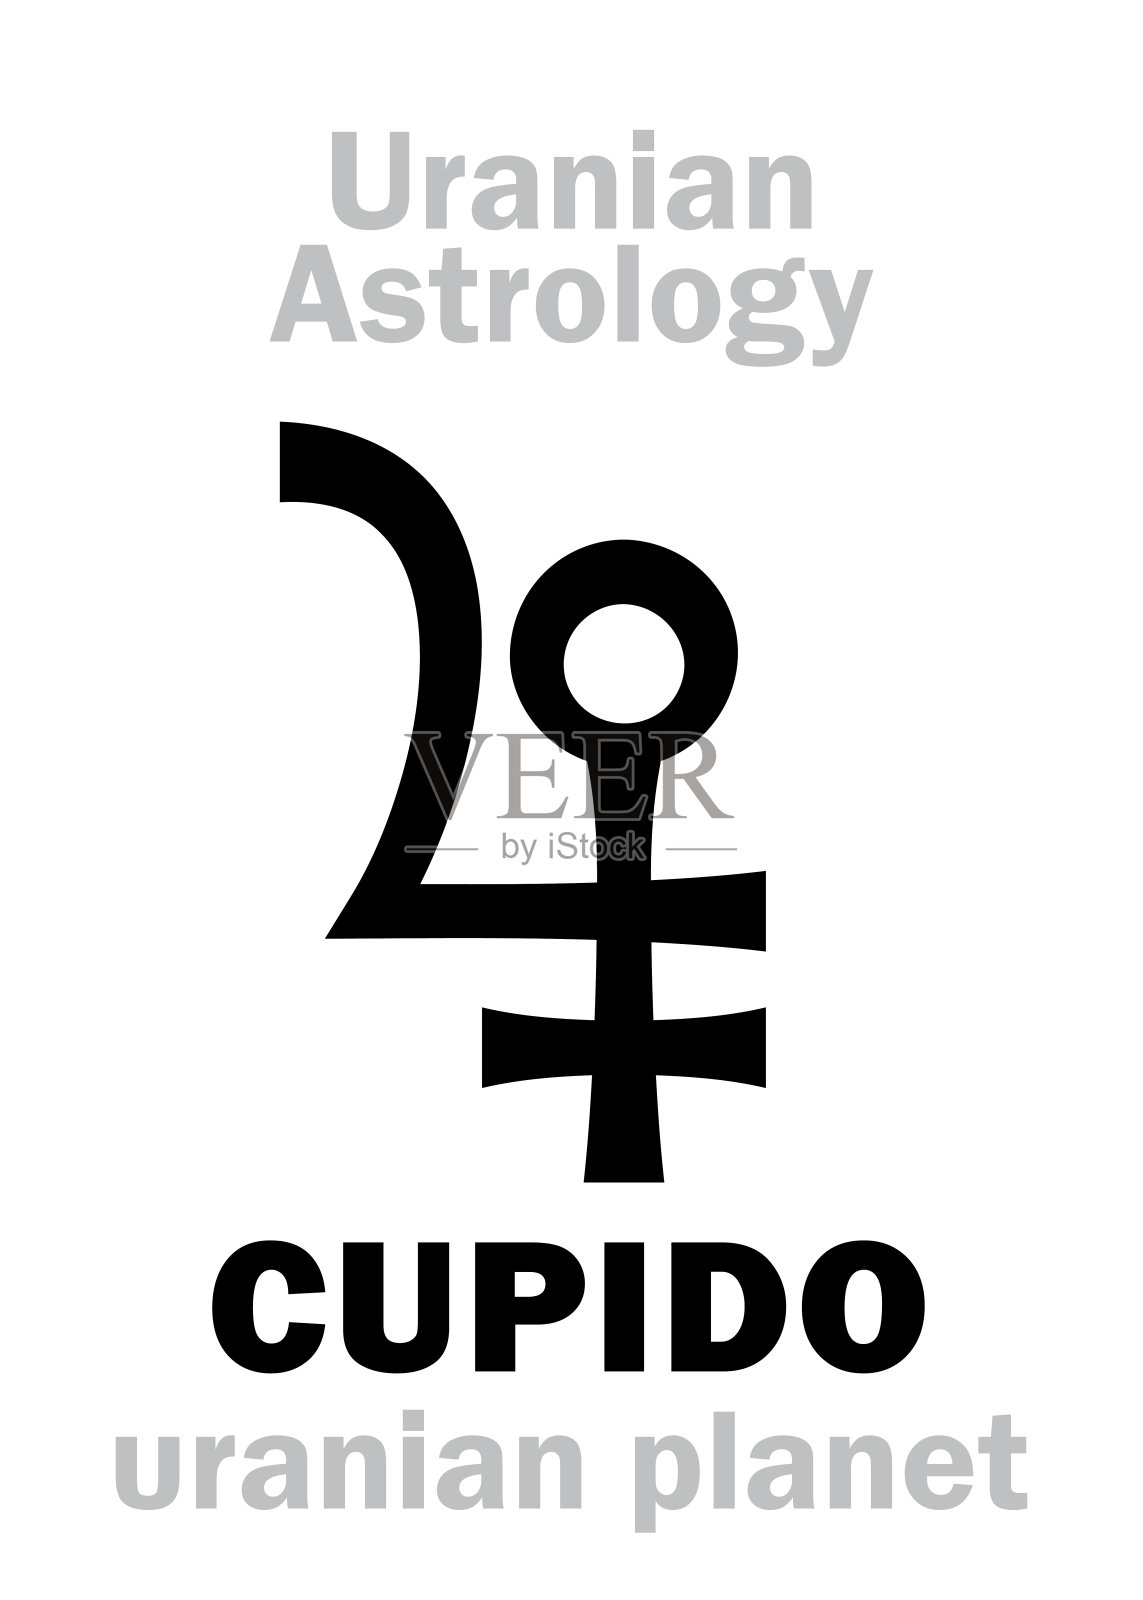 占星字母表:丘比多(阿穆尔)，天王星行星(外海王星点)。象形文字符号(单符号)。插画图片素材